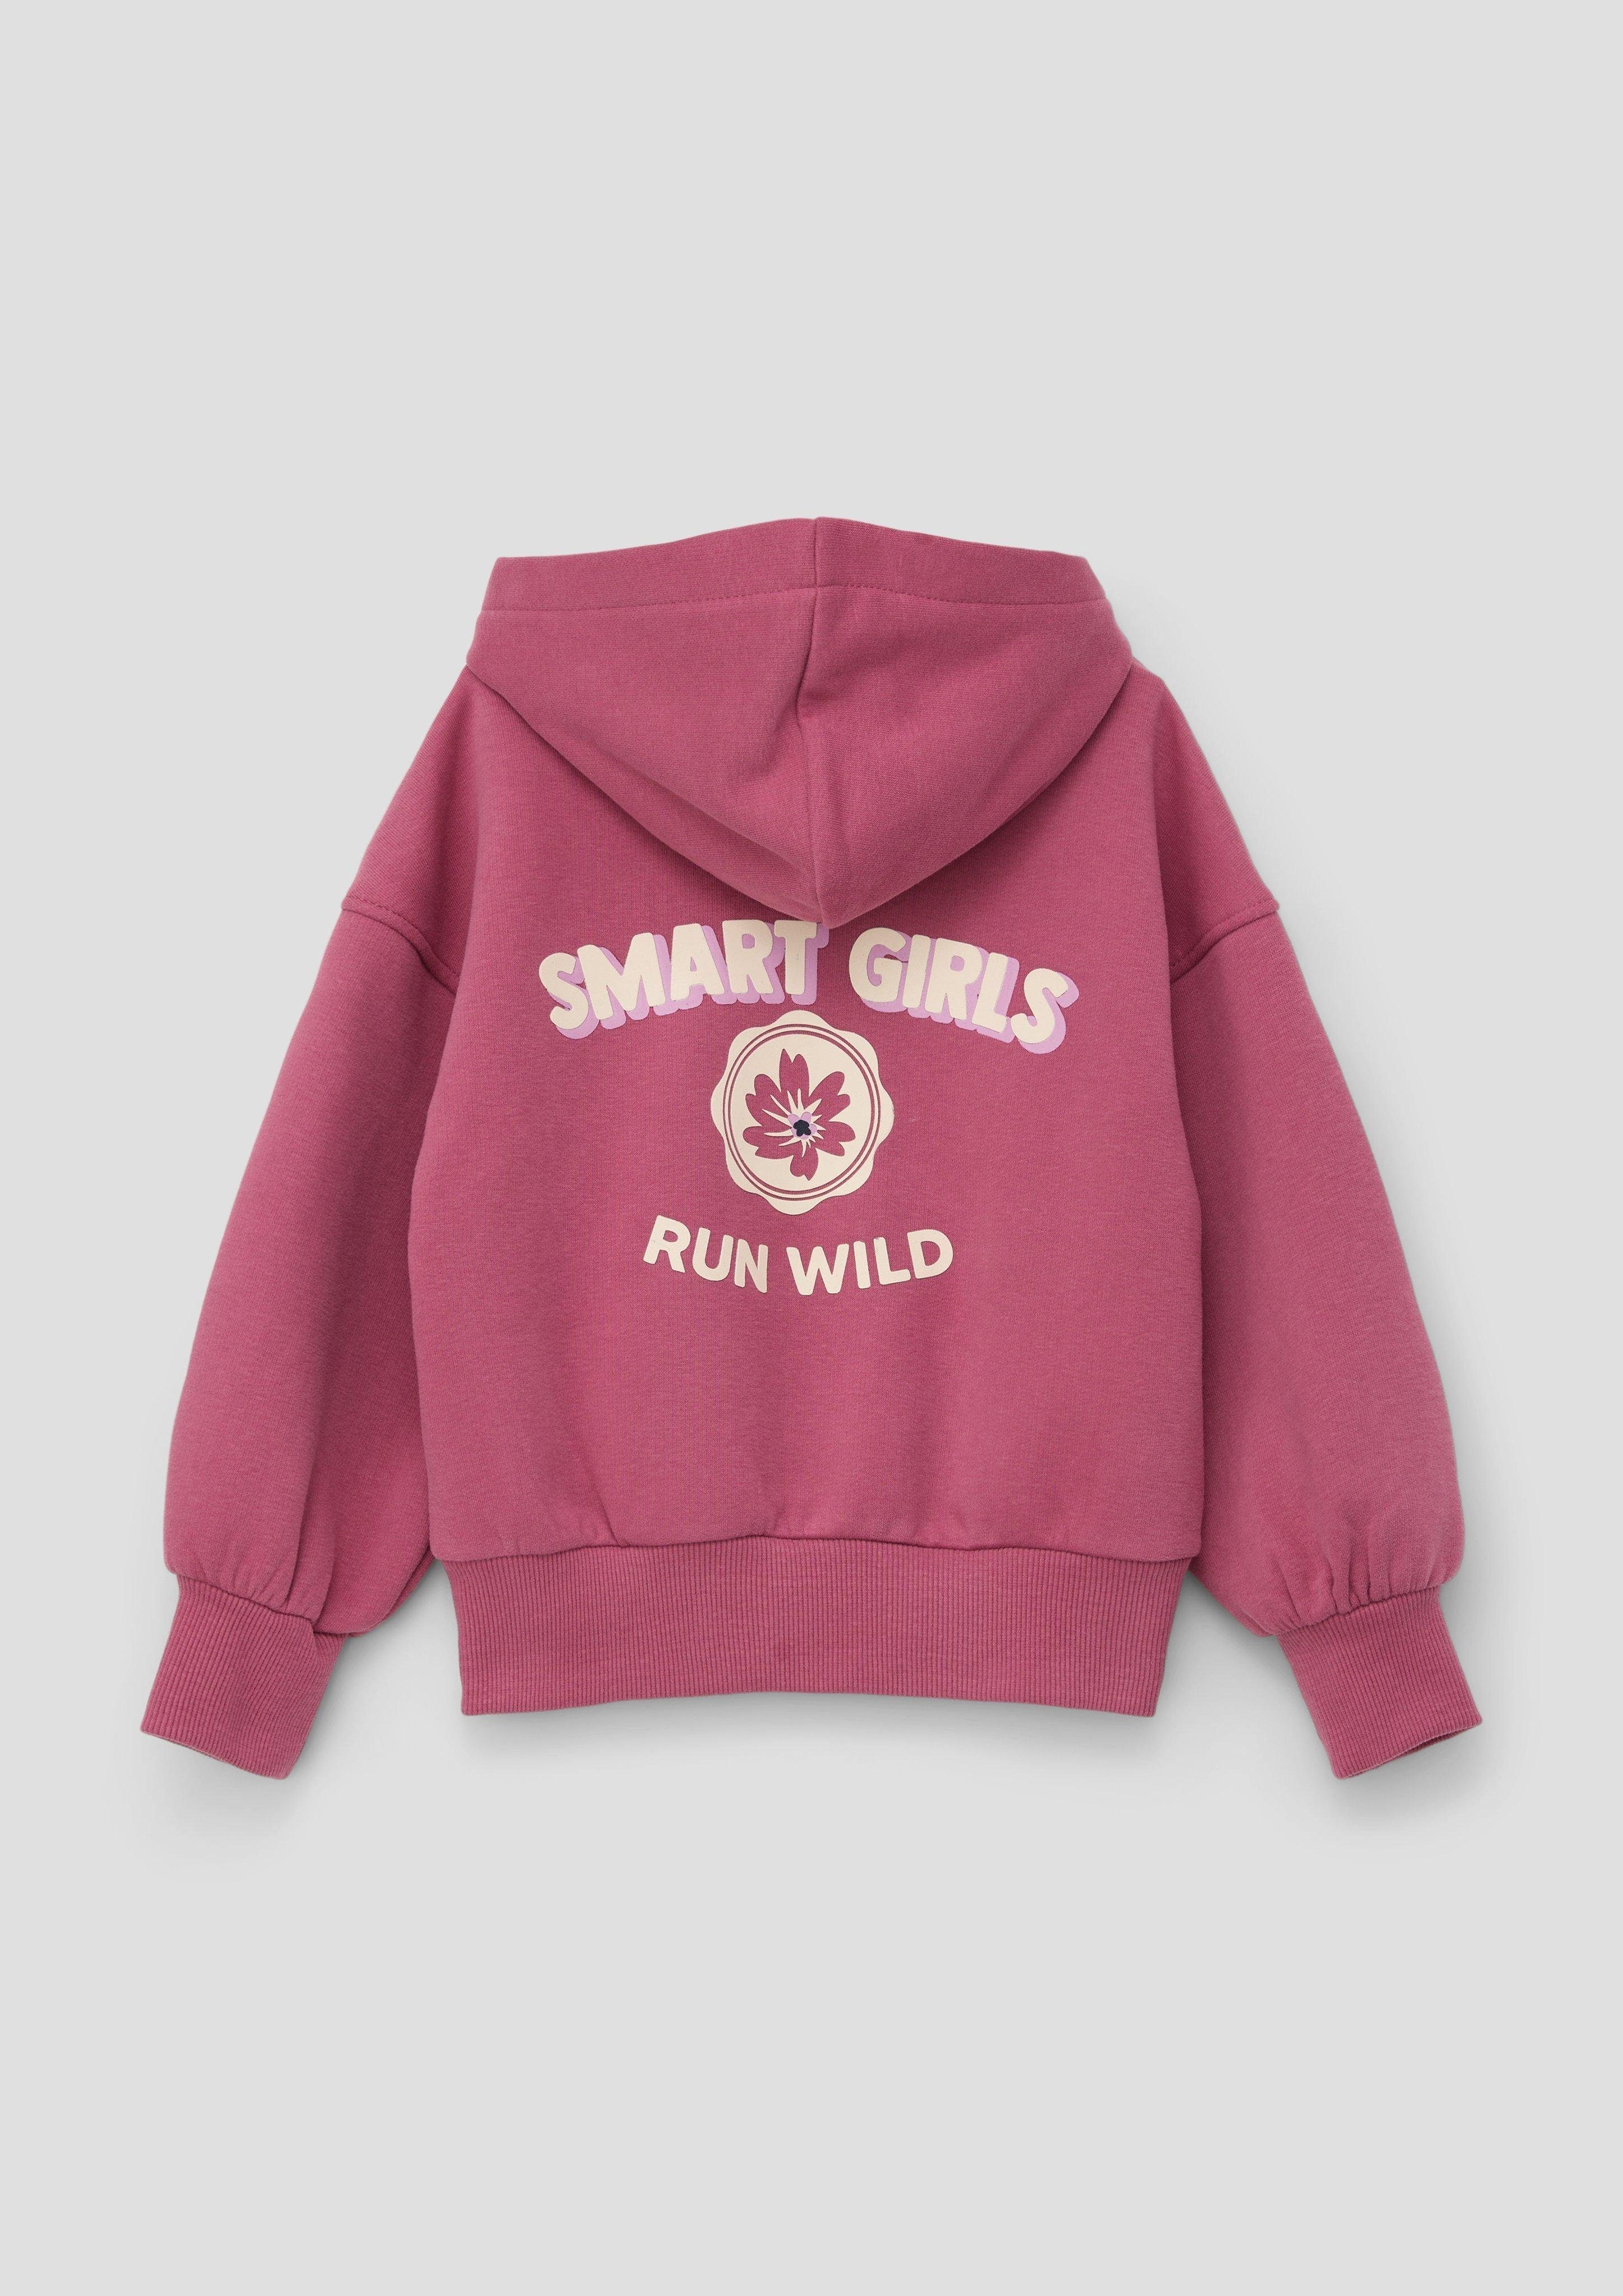 Innenseite Sweatshirt mit Kapuzensweater pink weicher s.Oliver